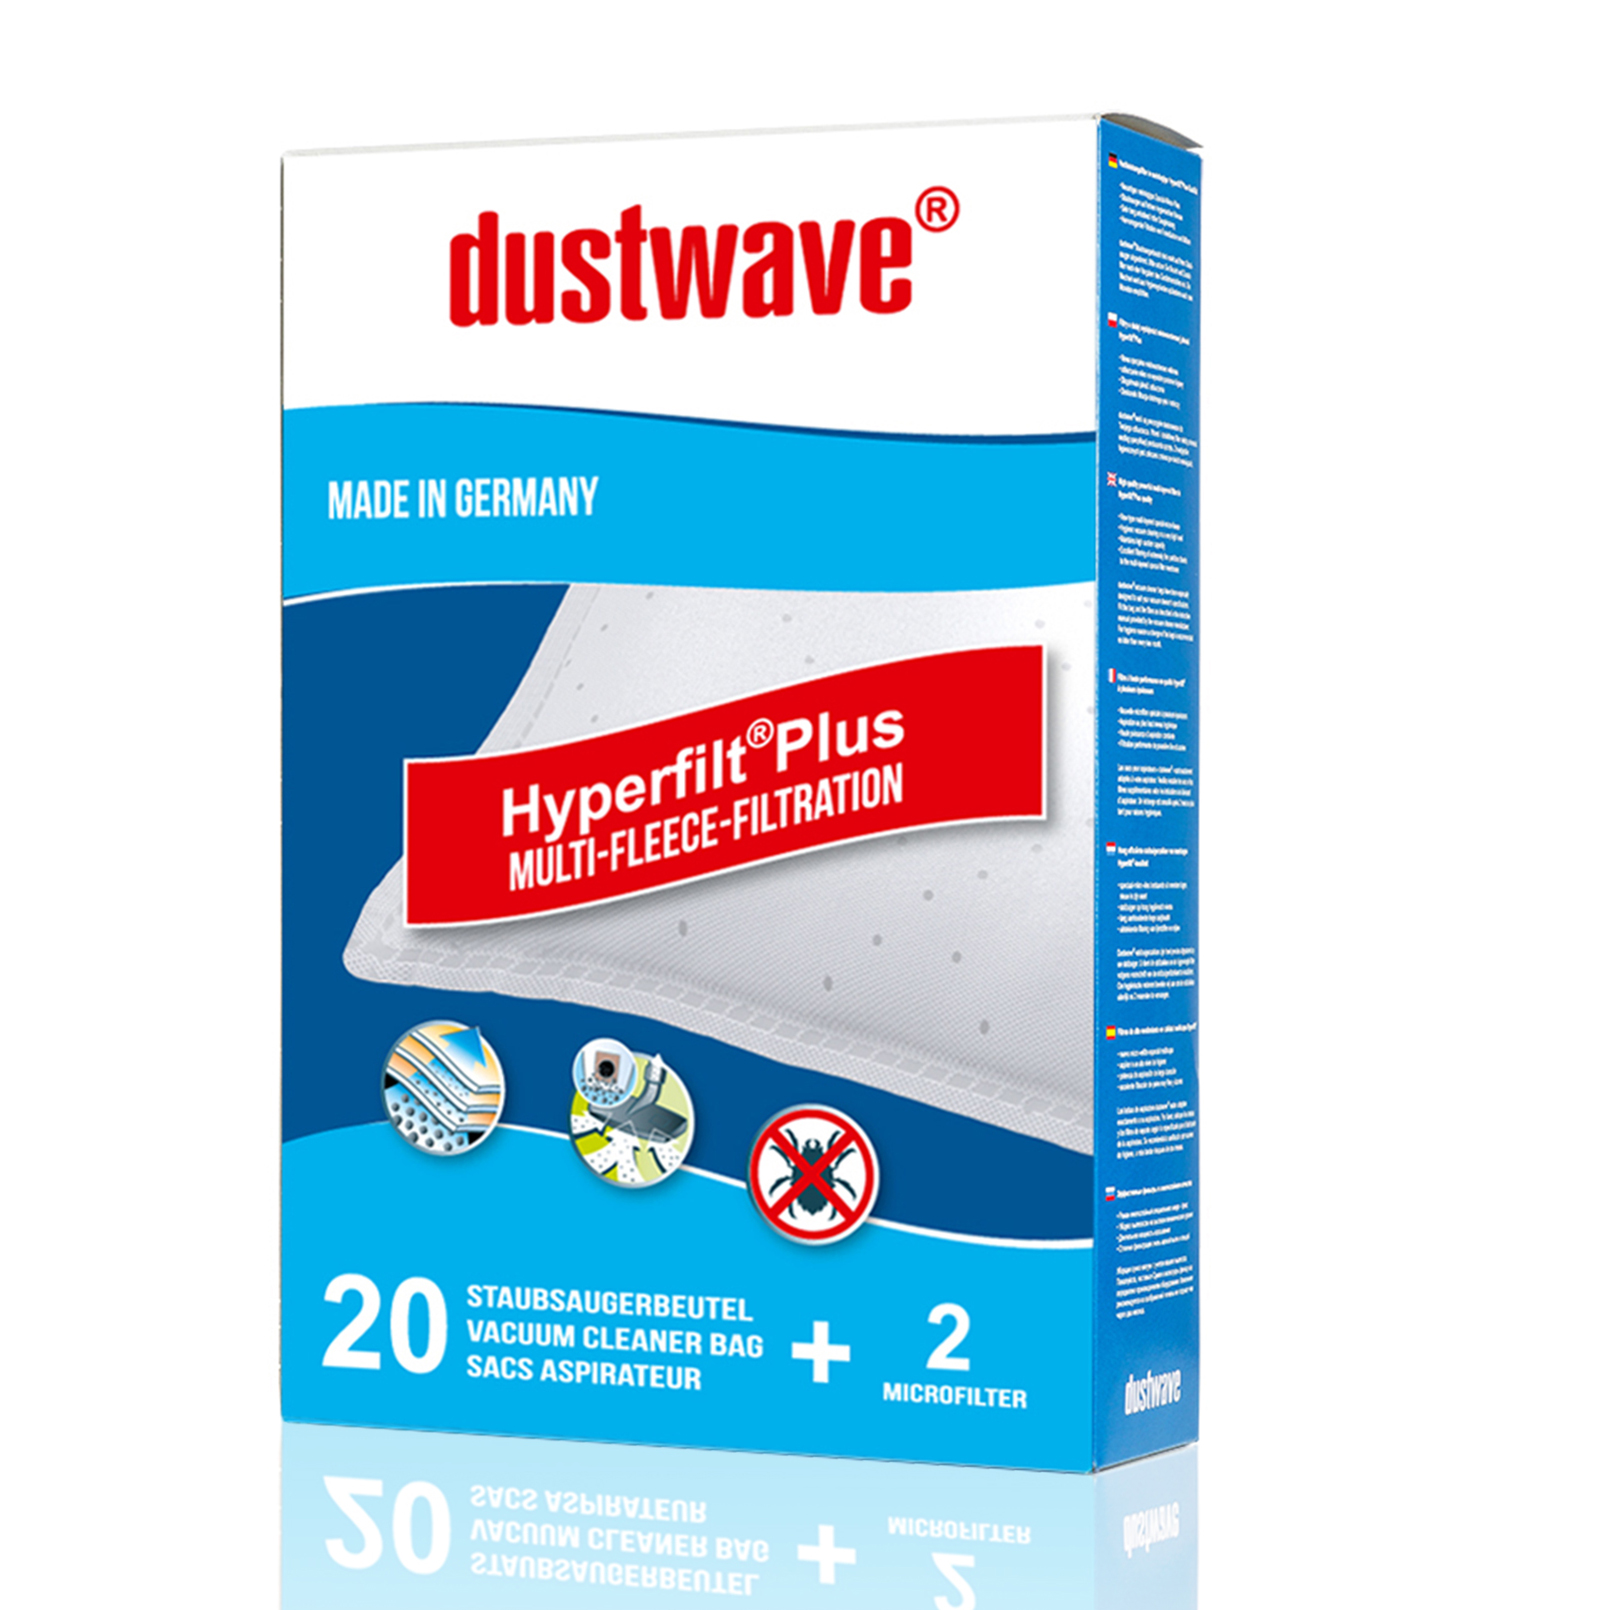 Dustwave® 5 Staubsaugerbeutel für Miele S2180 / S 2180 - hocheffizient, mehrlagiges Mikrovlies mit Hygieneverschluss - Made in Germany